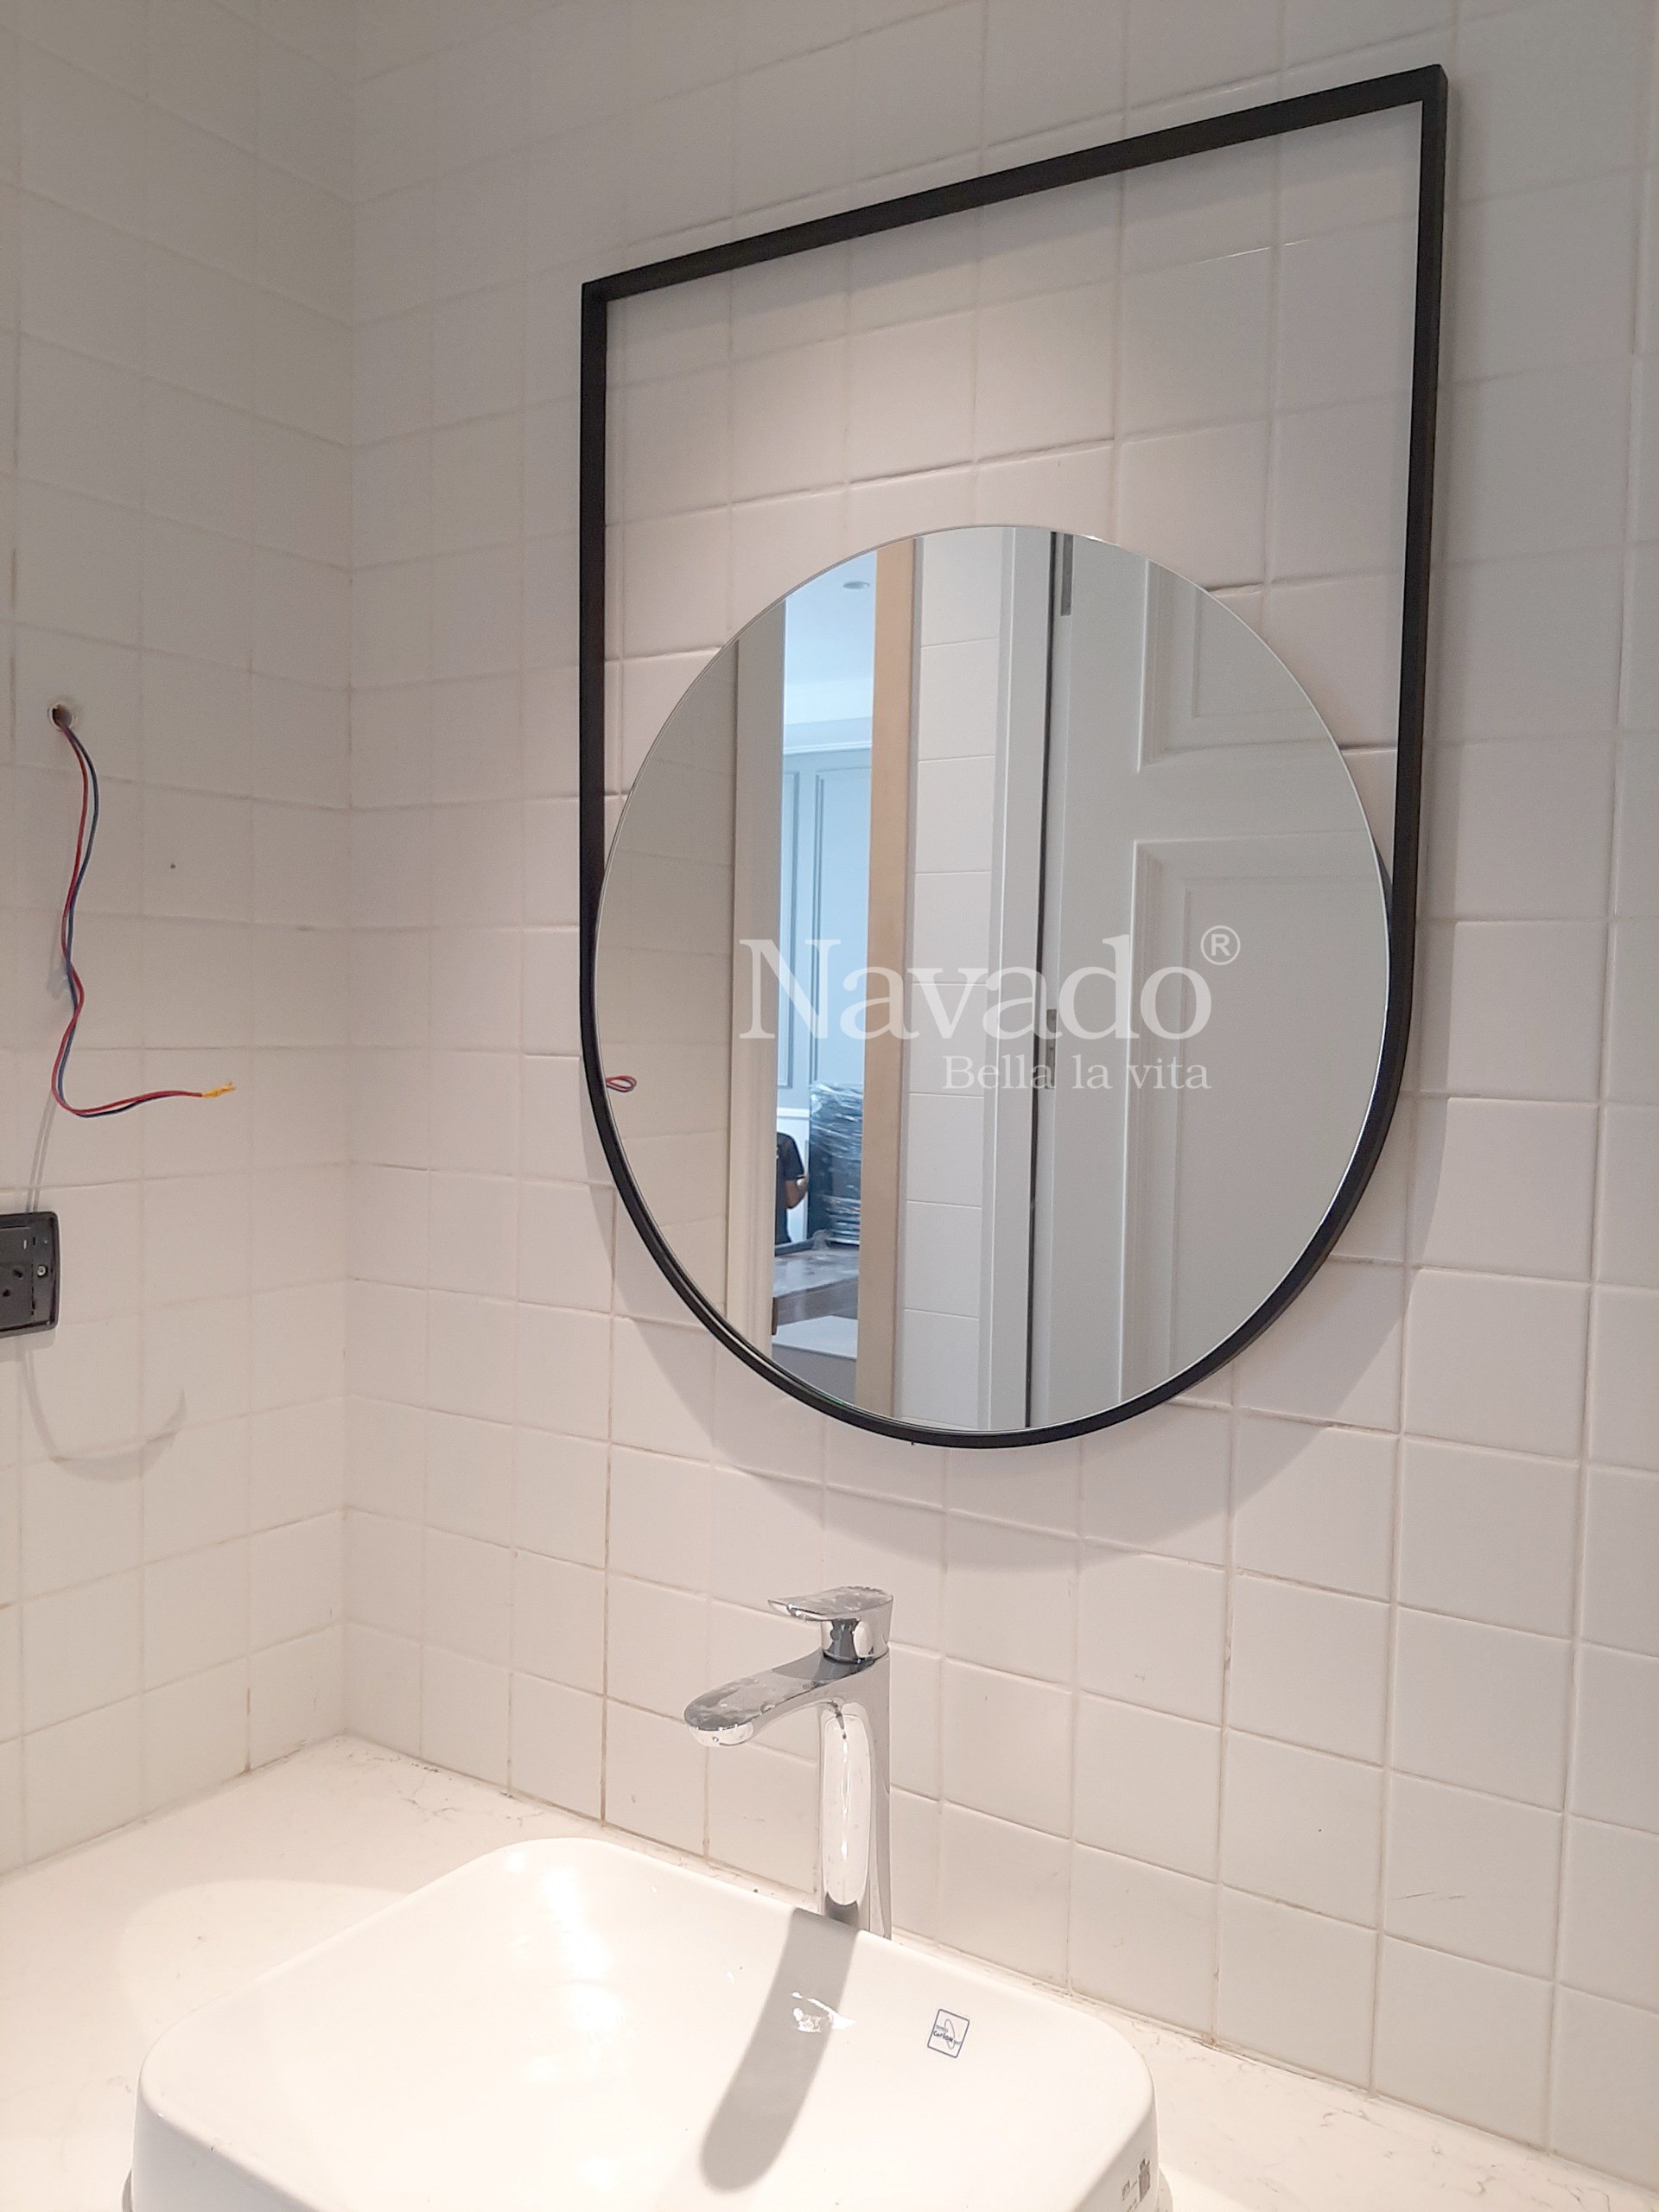 Gương treo tường nhà tắm là điểm nhấn quan trọng trong không gian này. Hình ảnh một chiếc gương treo tường phòng tắm đẹp sẽ giúp bạn thêm tự tin khi thực hiện các hoạt động chăm sóc bản thân hàng ngày. Với thời đại công nghệ hiện nay, các loại gương được sản xuất với nhiều tính năng thông minh và tiện ích khác nhau. Hãy lựa chọn một chiếc gương treo tường phù hợp với phong cách và nhu cầu của bạn.